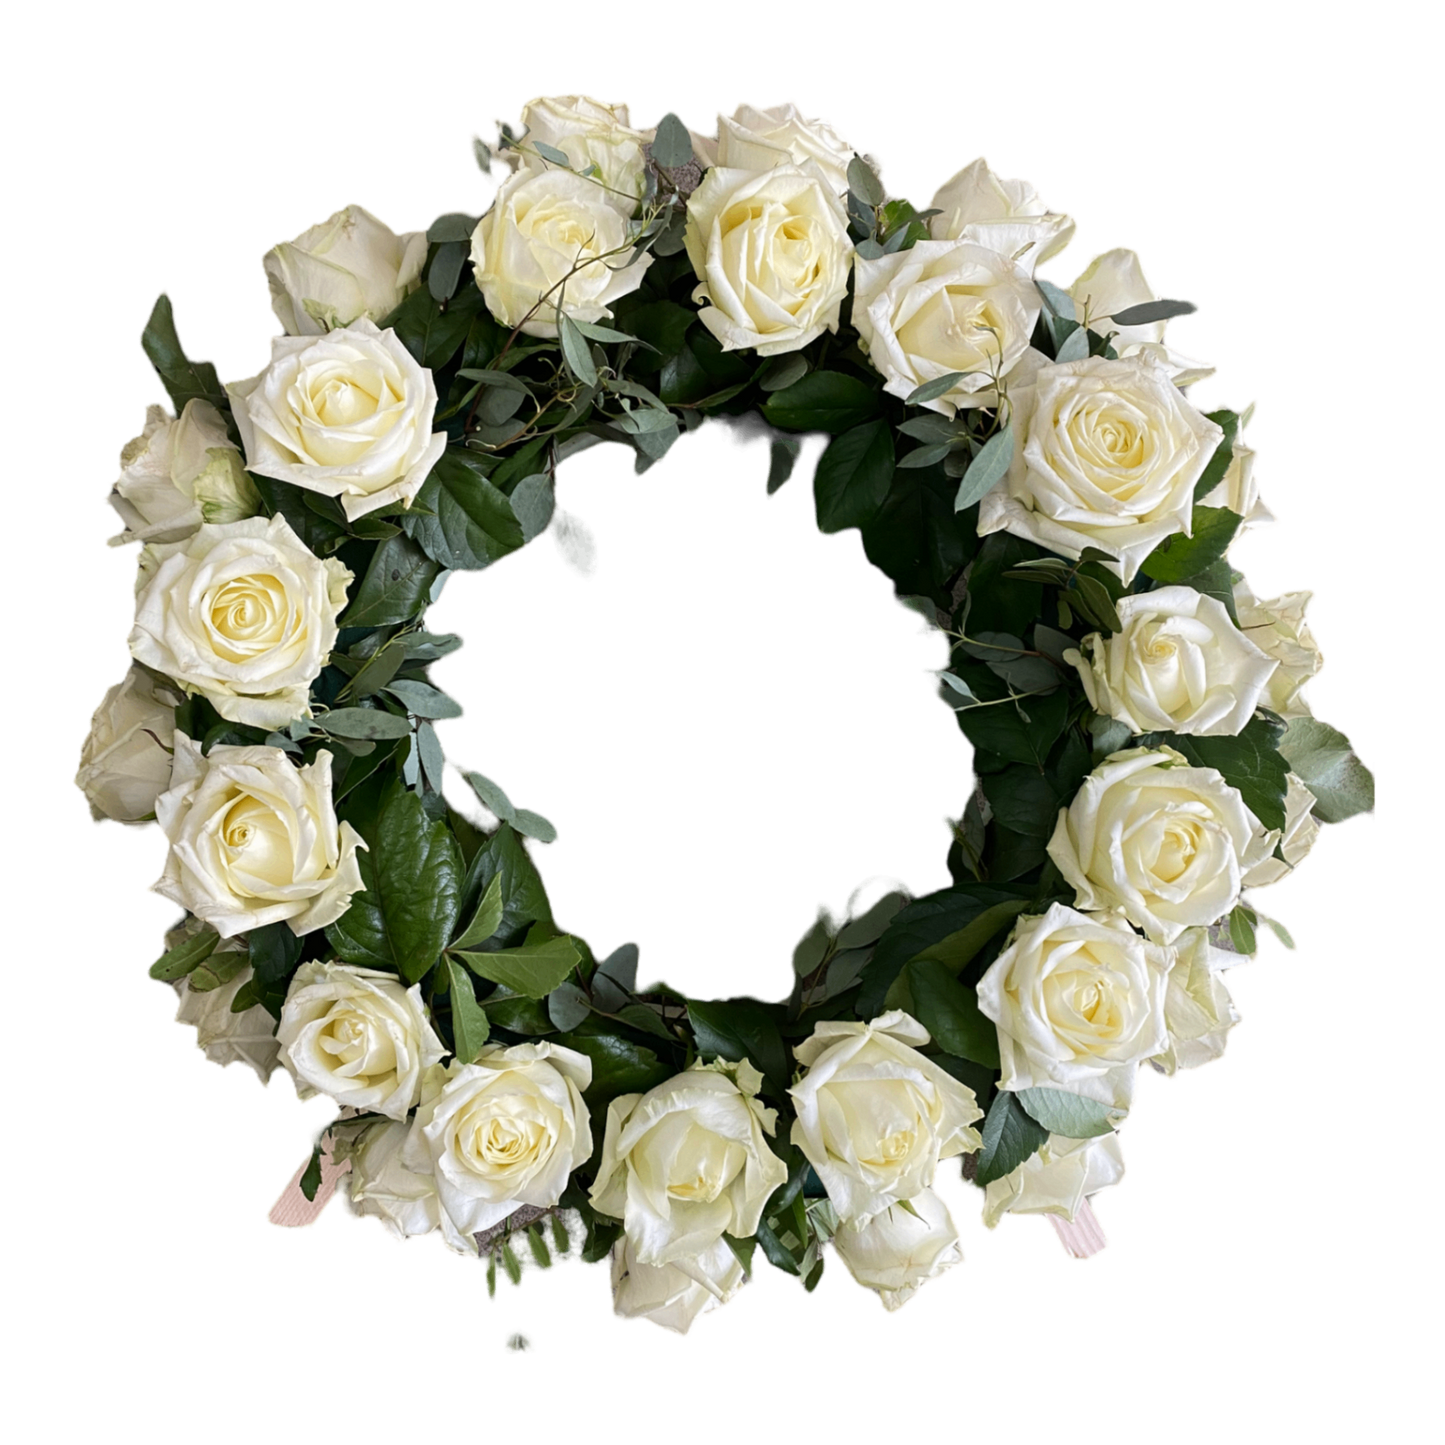 Coroana funerara rotunda naturala realizata din trandafiri albi, frunze decorative: eucalipt si frunze de trandafir